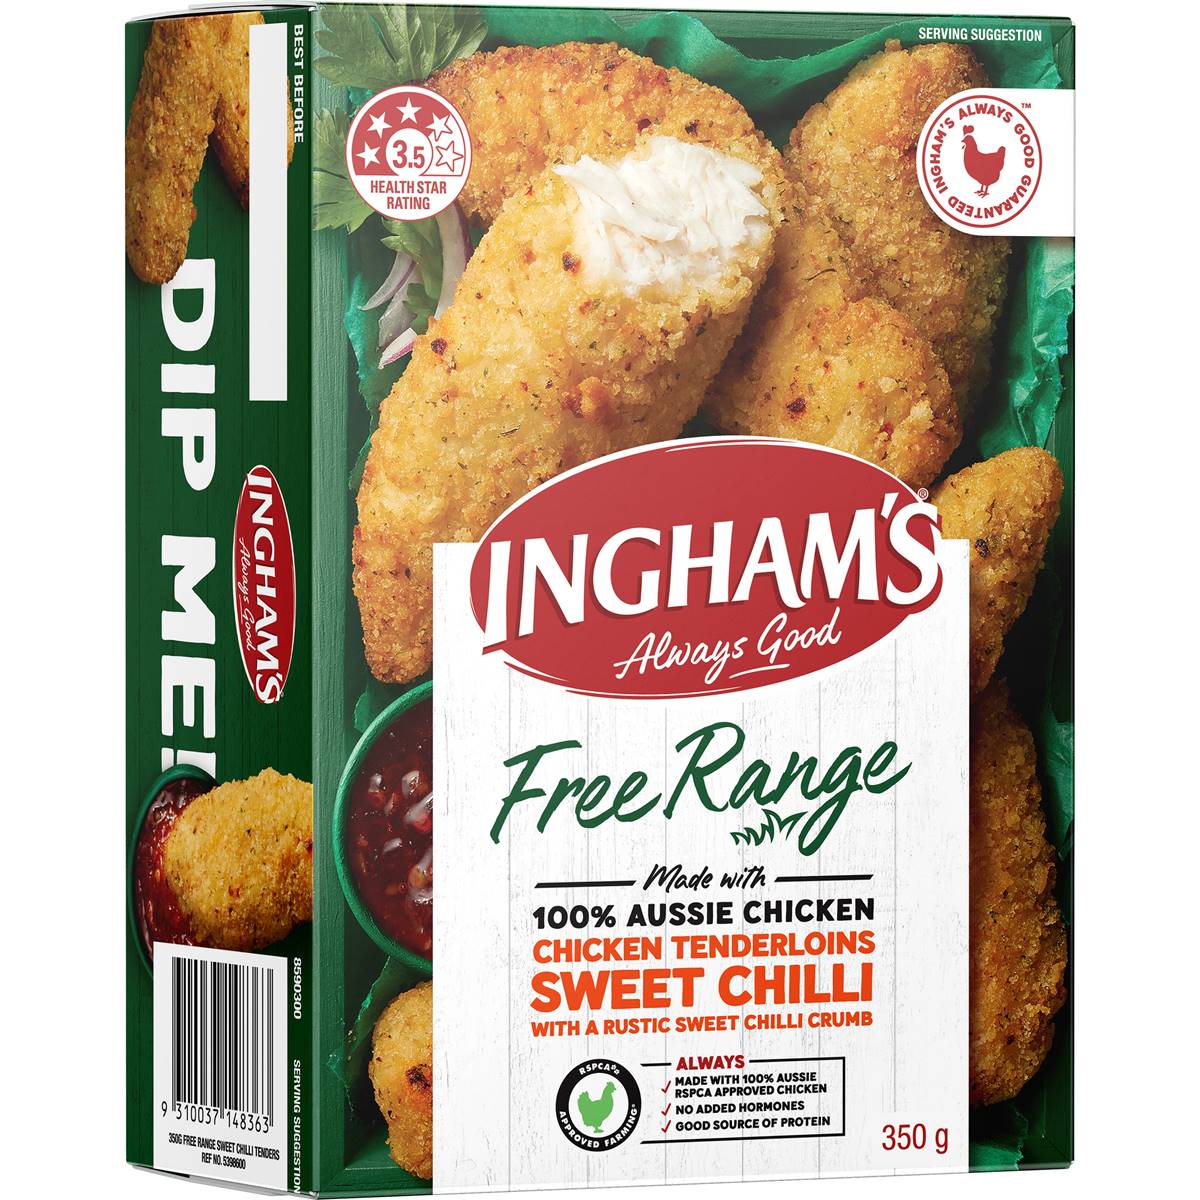 Calories in Ingham's Free Range Chicken Tenderloins Sweet Chilli